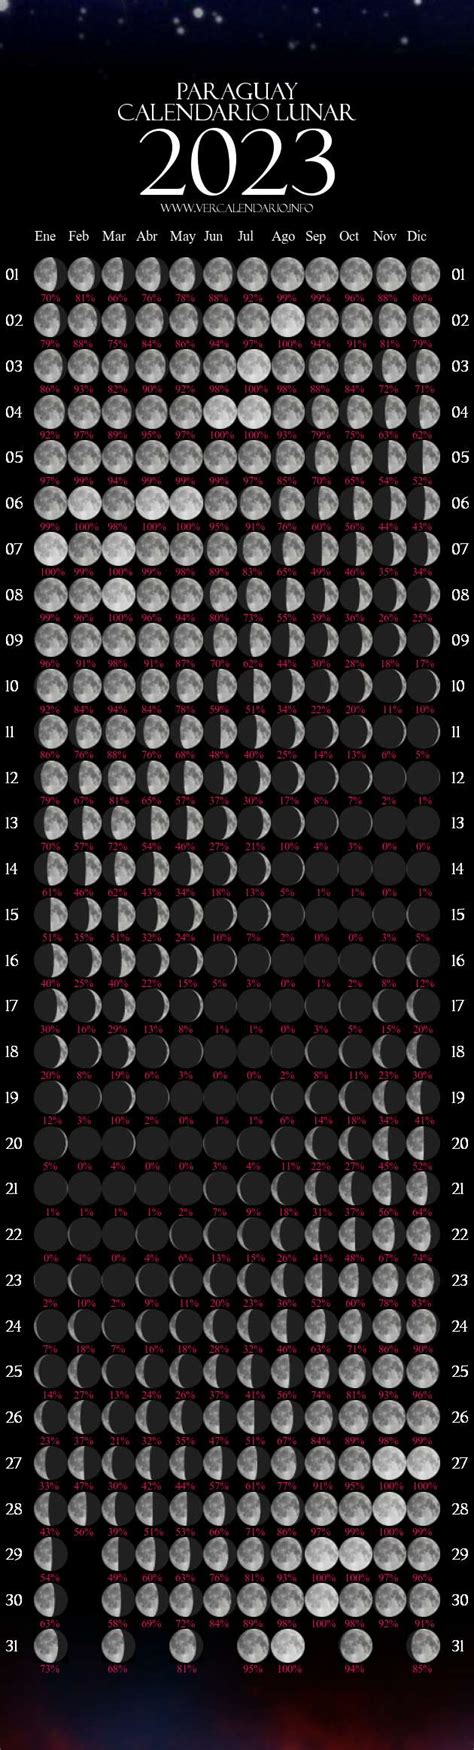 Calendario Lunar 2023 Paraguay